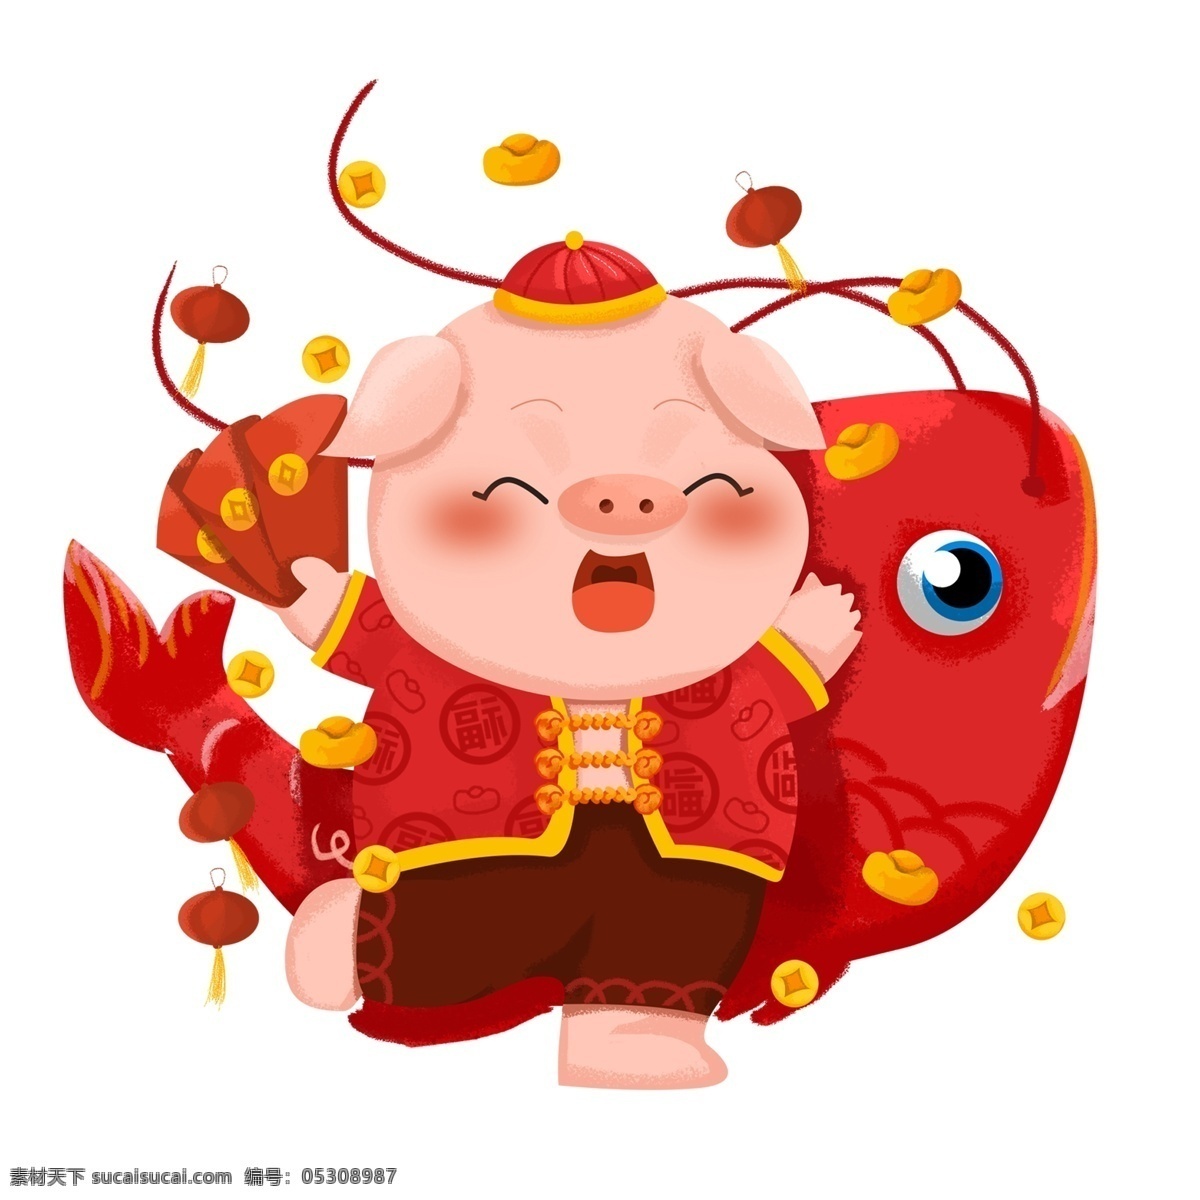 2019 喜庆 猪年 元素 年年有余 红包 手绘图案 简约 创意元素 新年红包 发红包了 手绘 手绘元素 psd元素 猪年红包